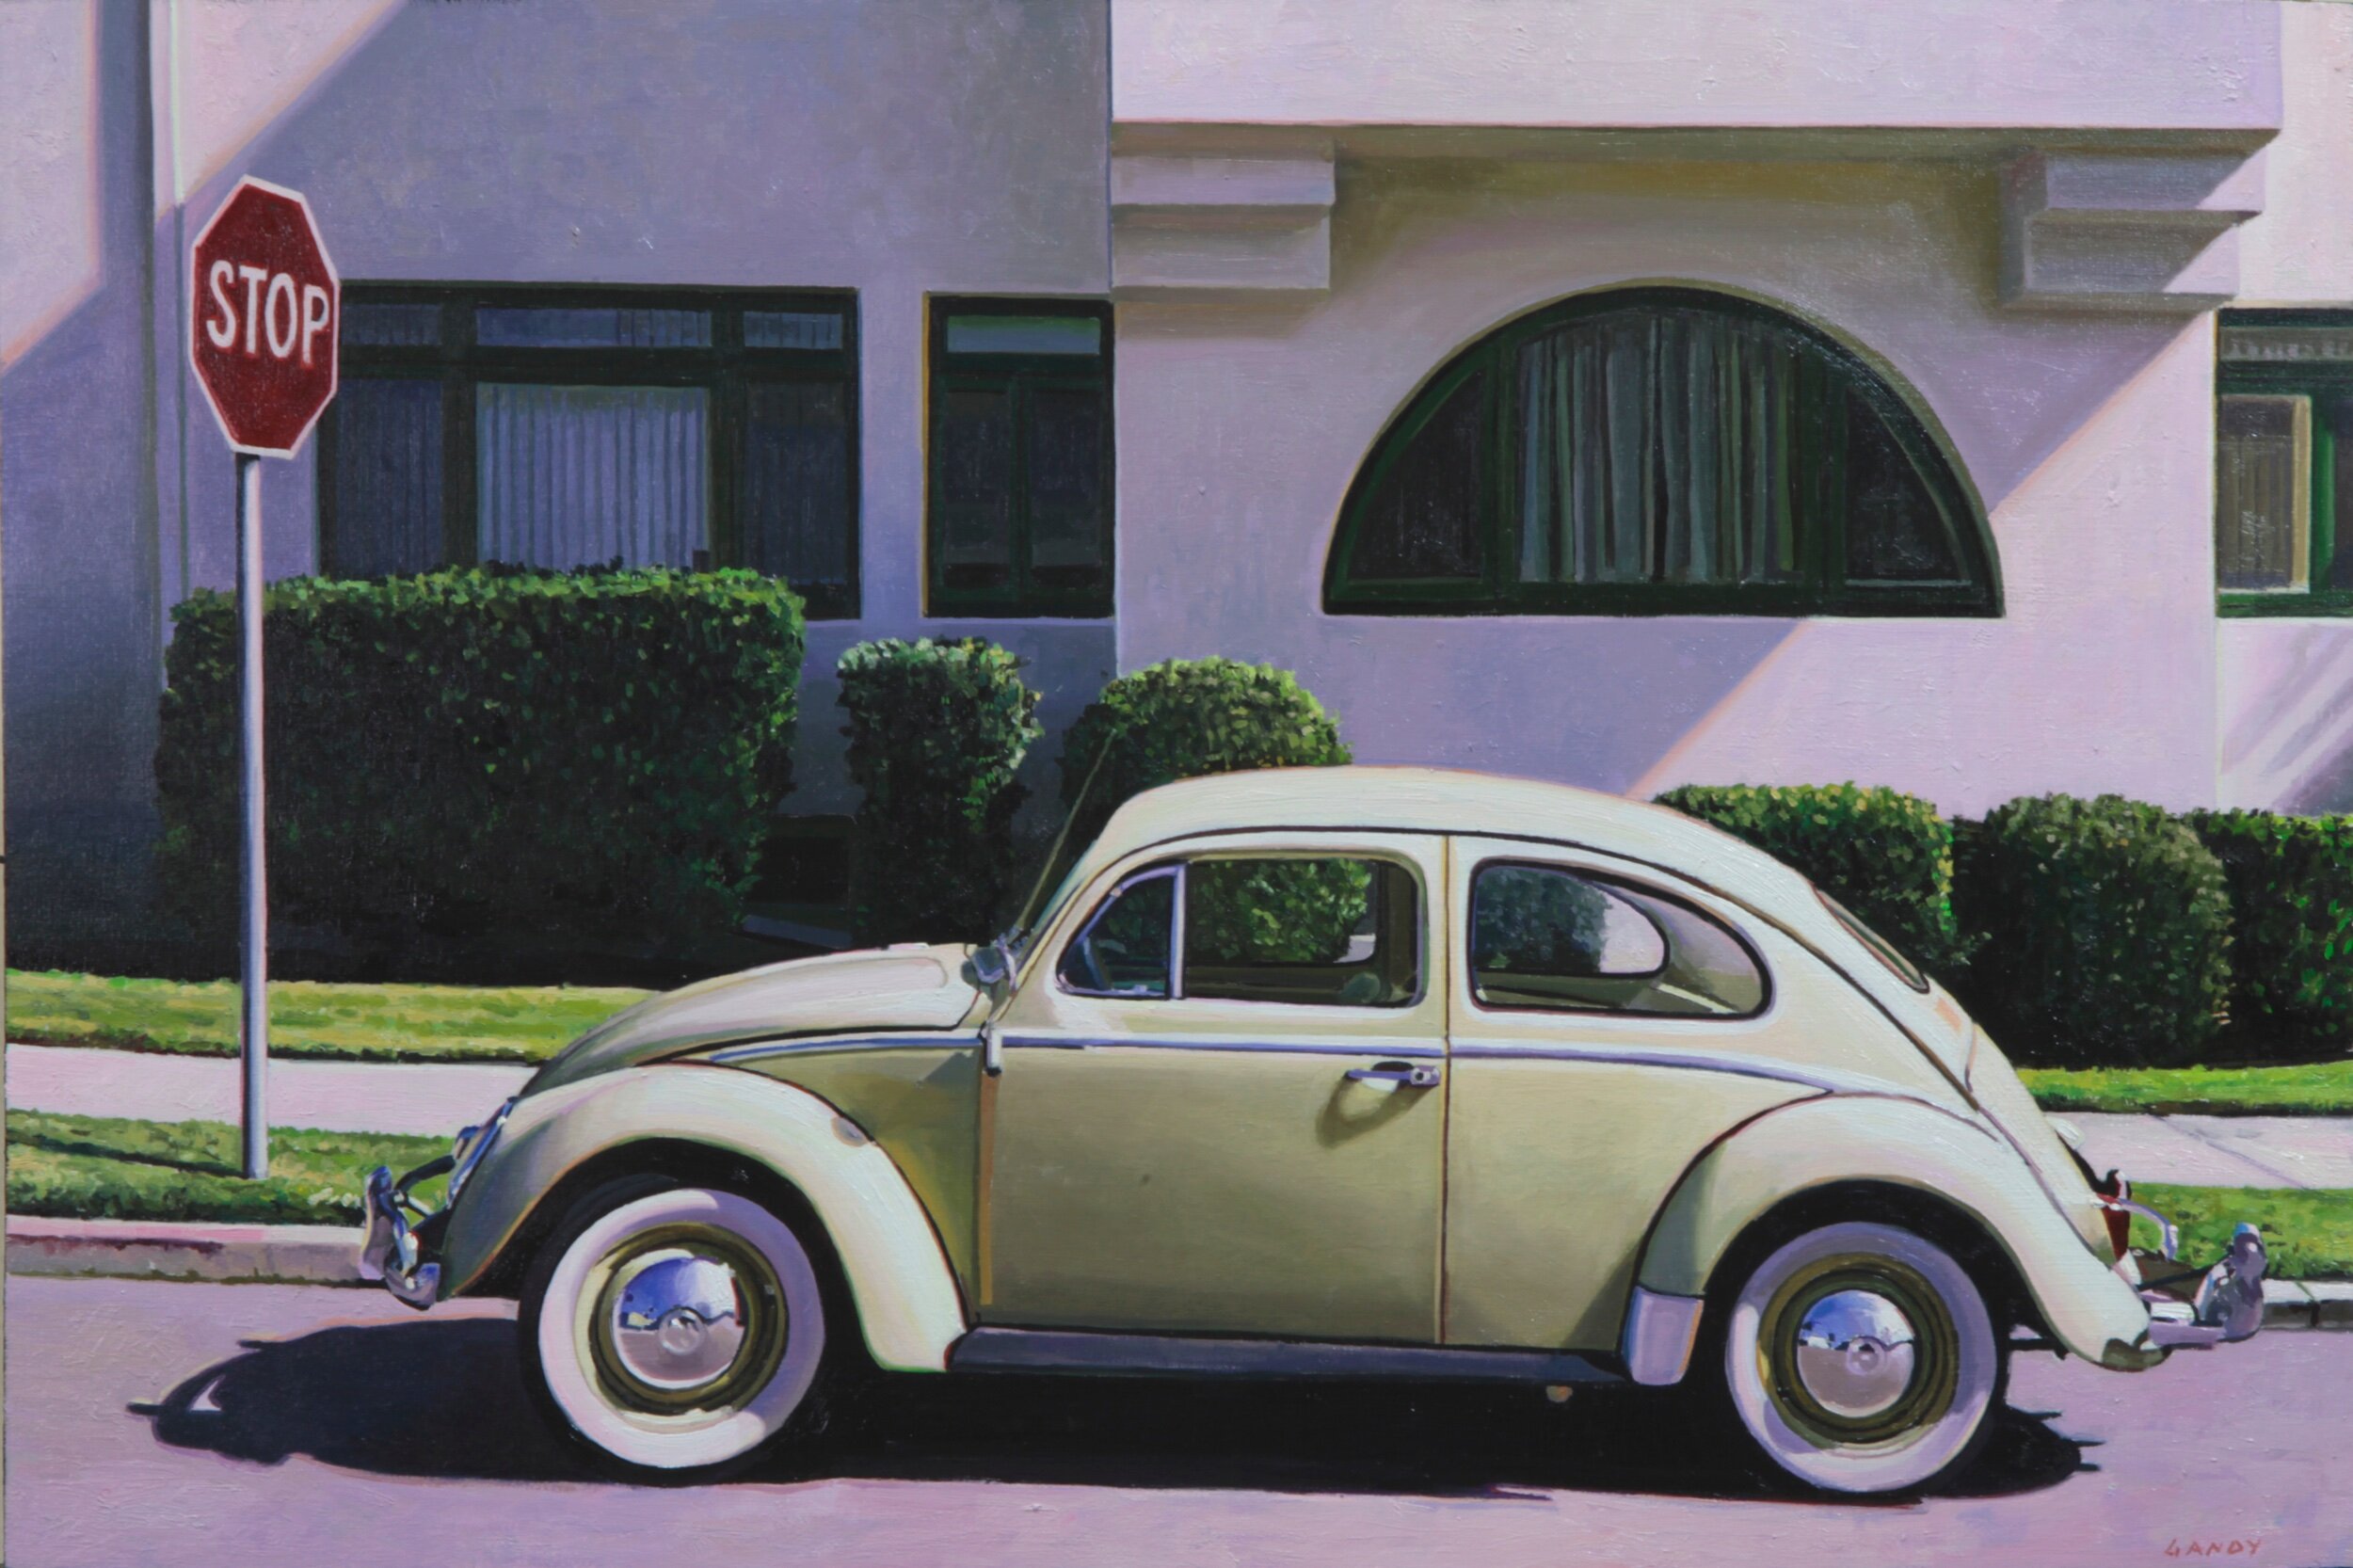 VW Bug in San Diego